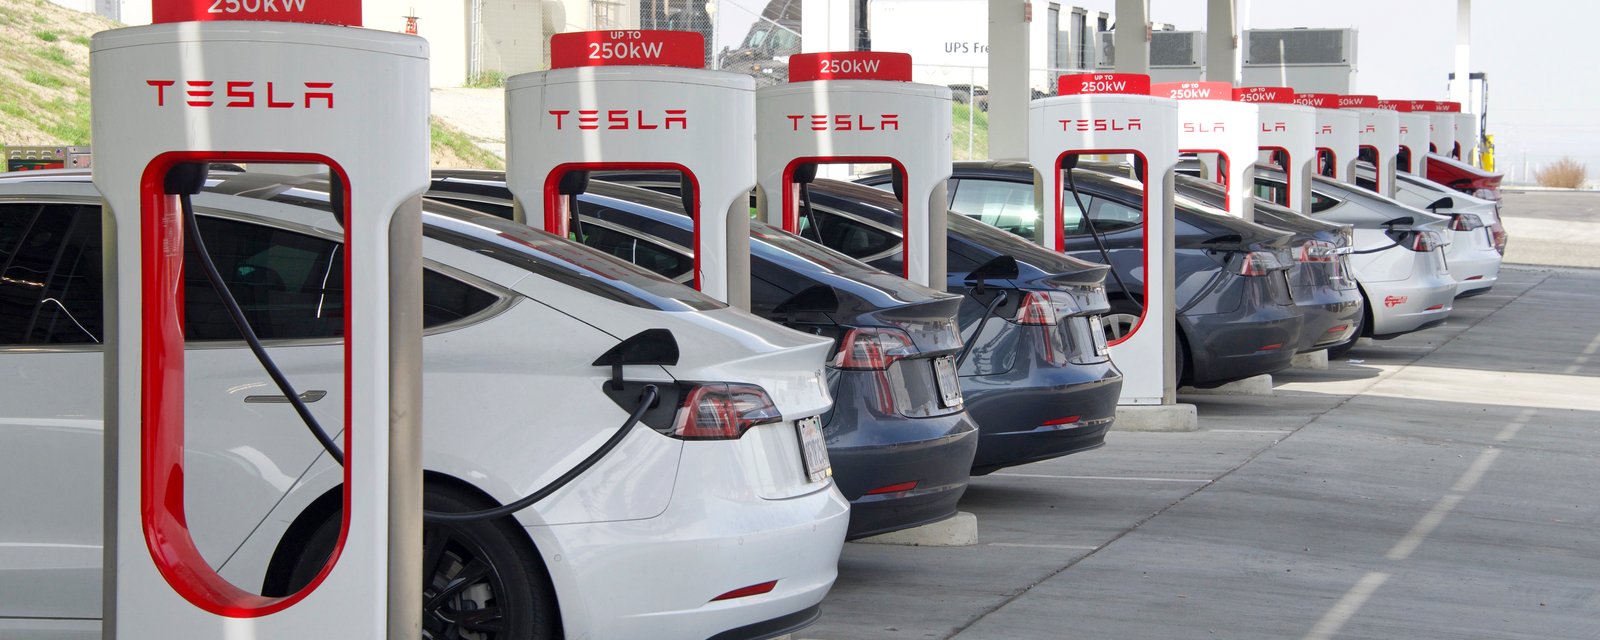 Des Tesla seront bientôt propulsées par du lithium du Québec